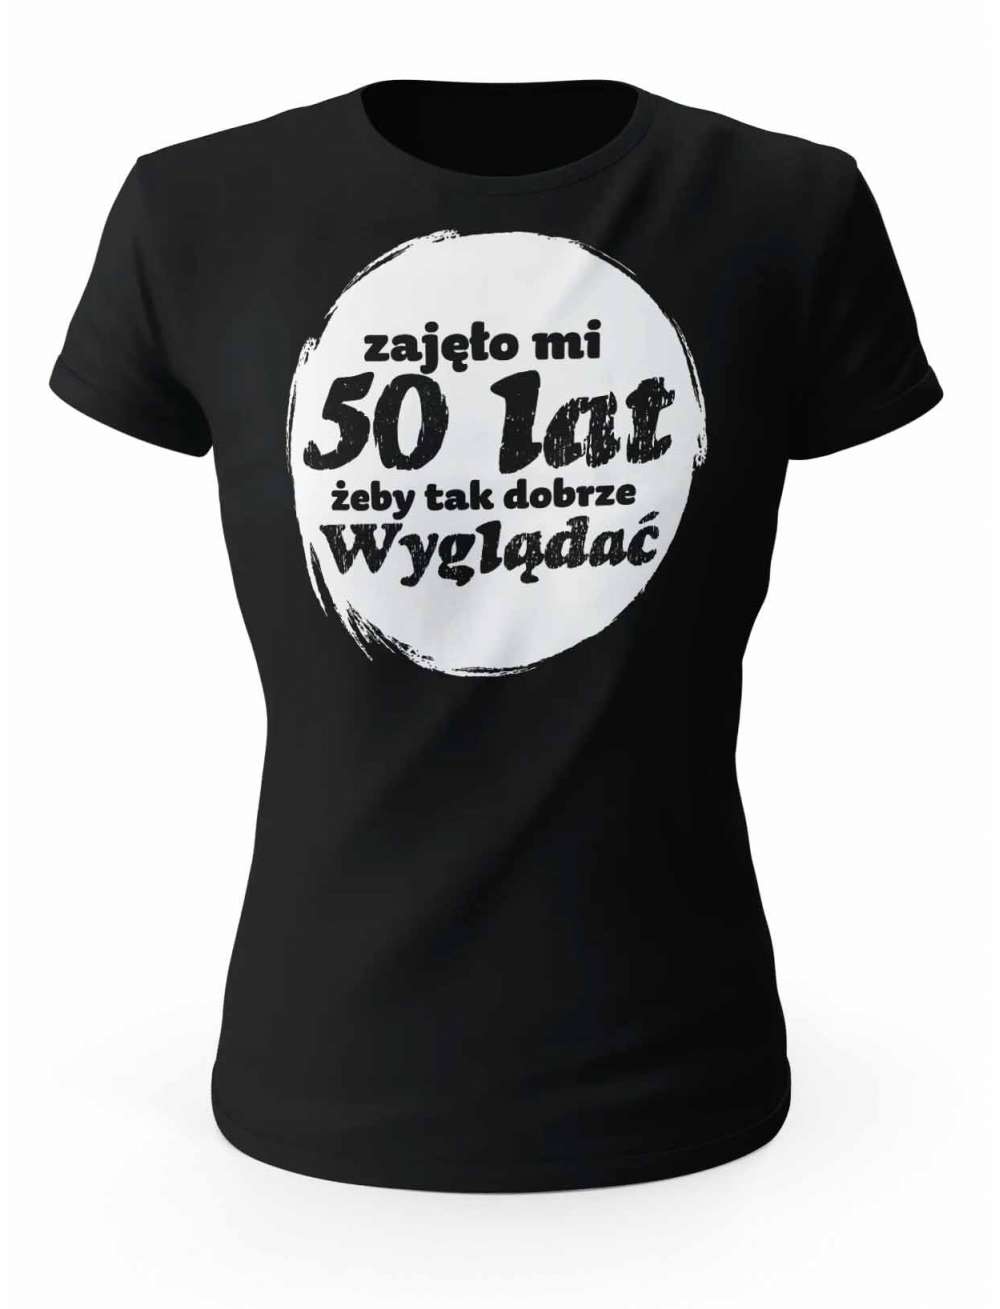 Koszulka Zajęło Mi 50 Lat Żeby Tak Wyglądać, T-shirt Dla Kobiety